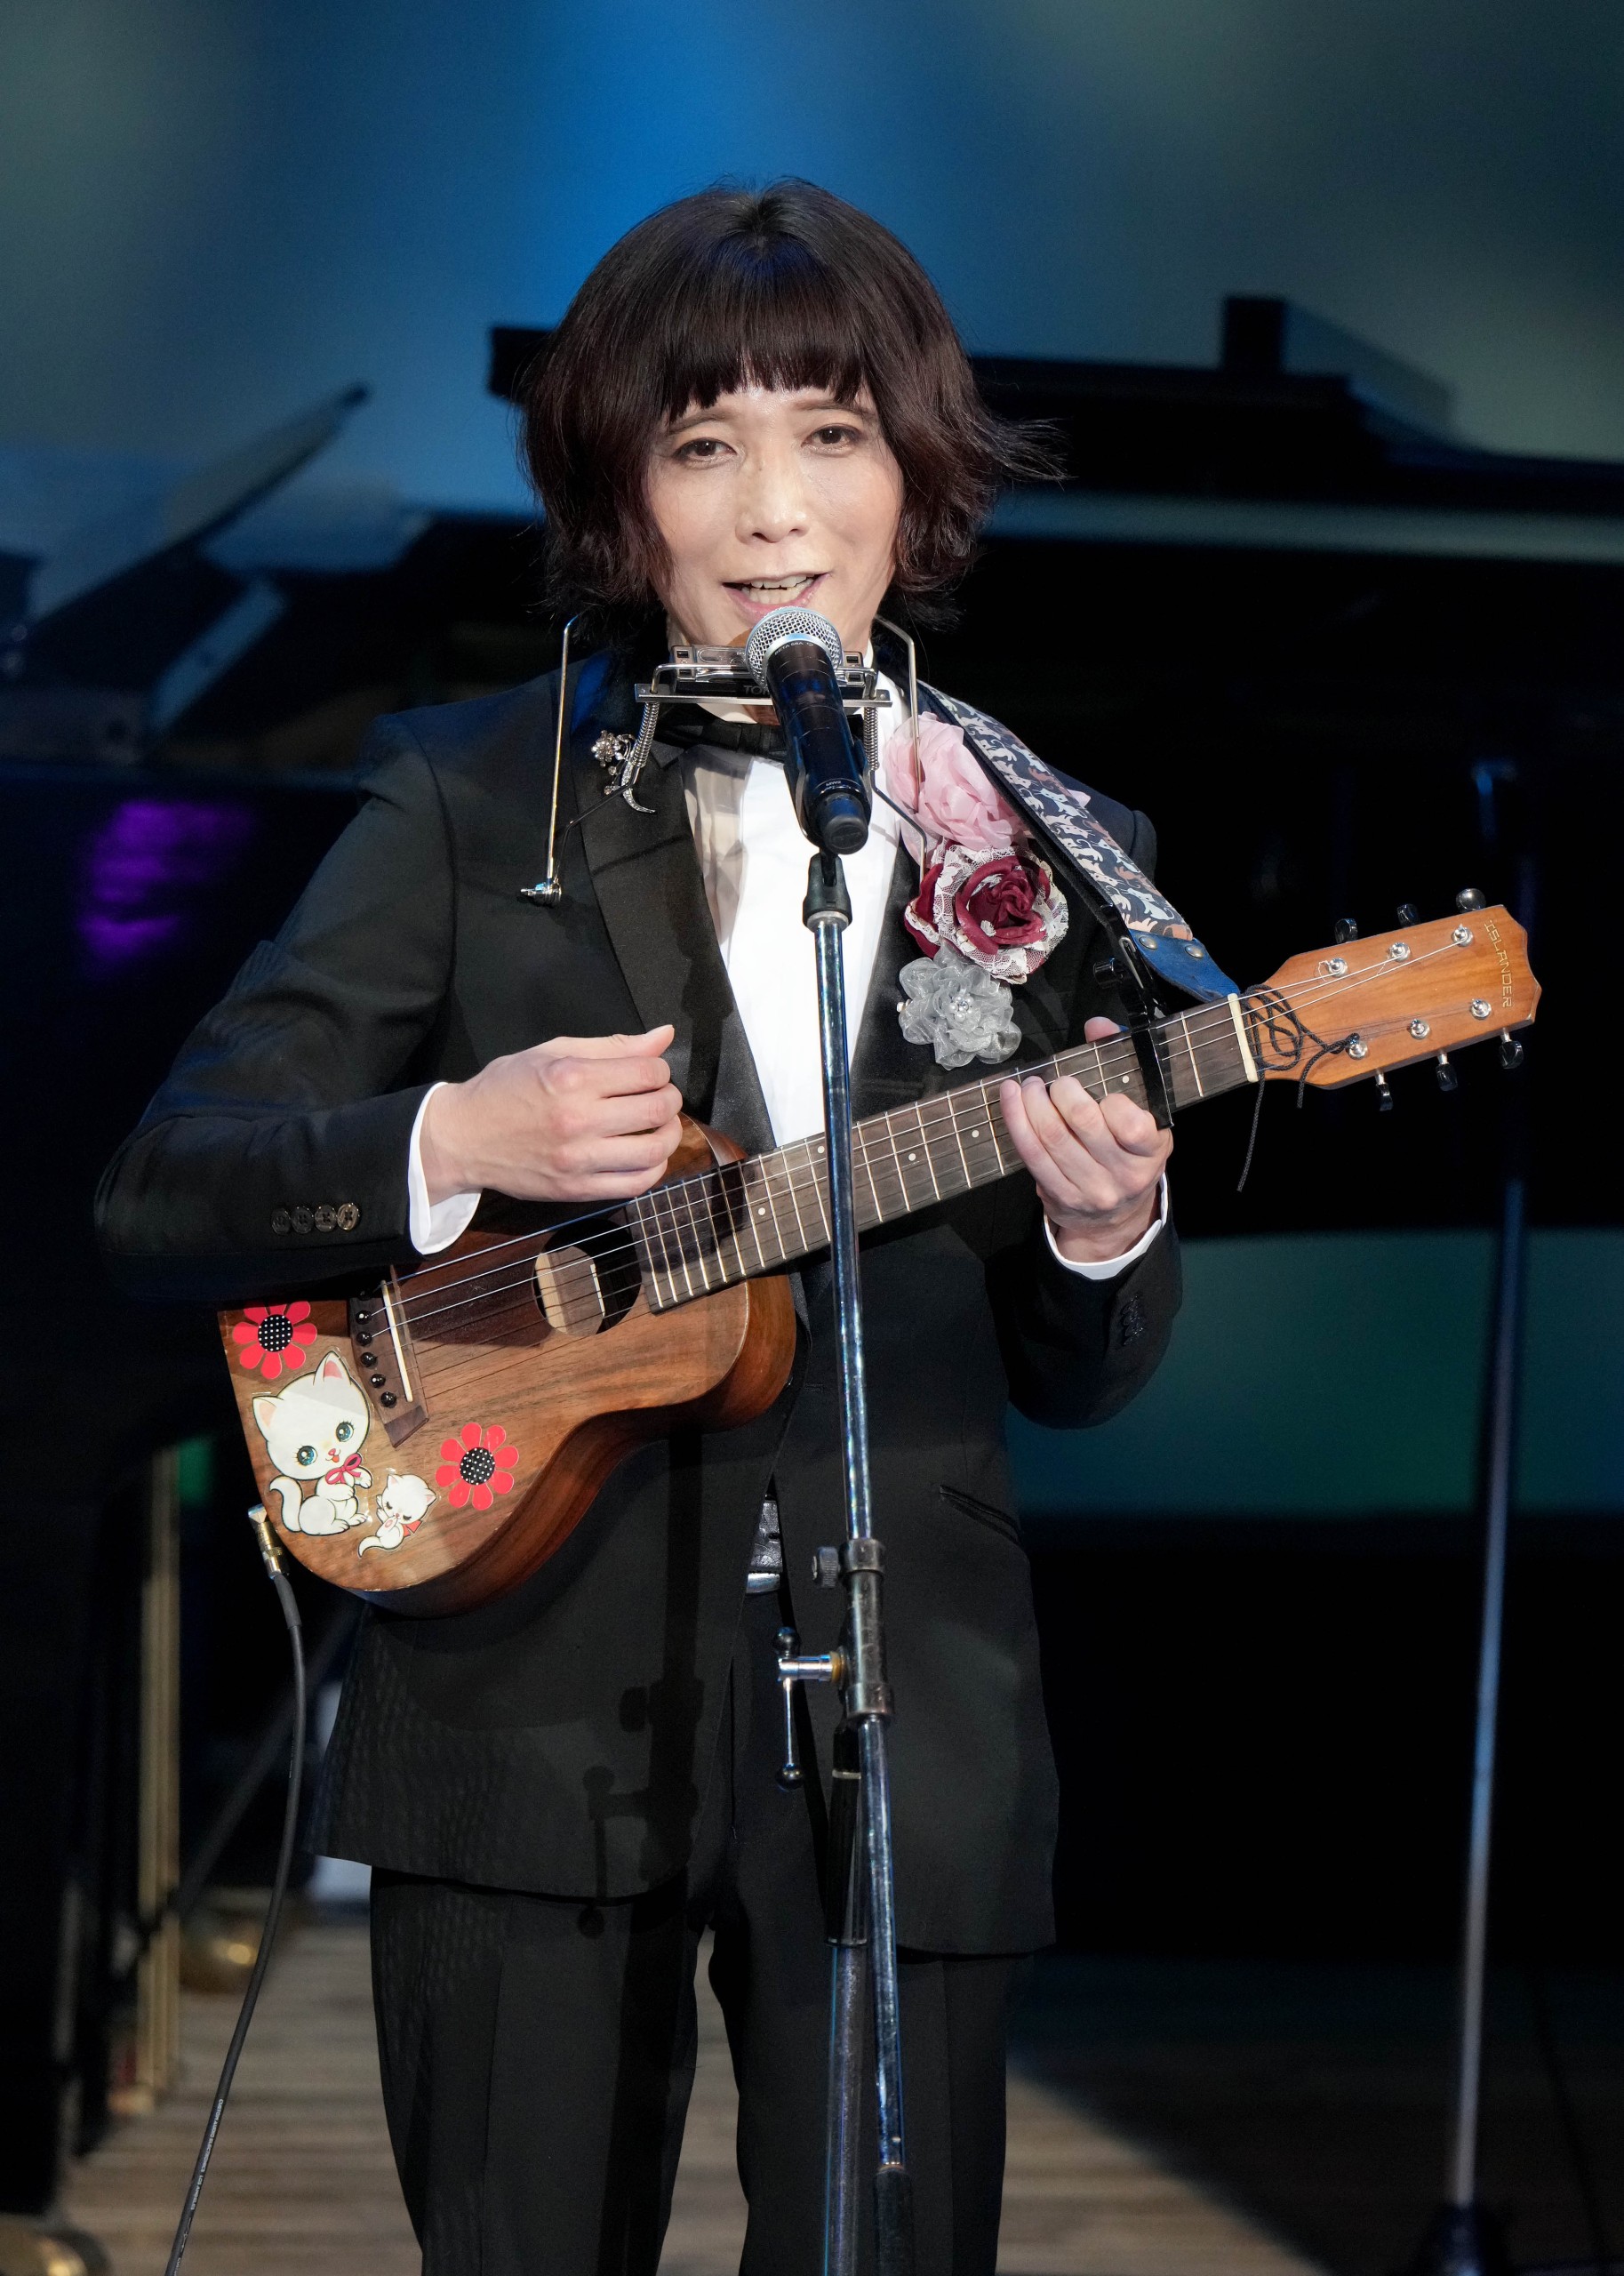 ムード歌謡の貴公子・タブレット純がデビュー20周年記念リサイタル。20 